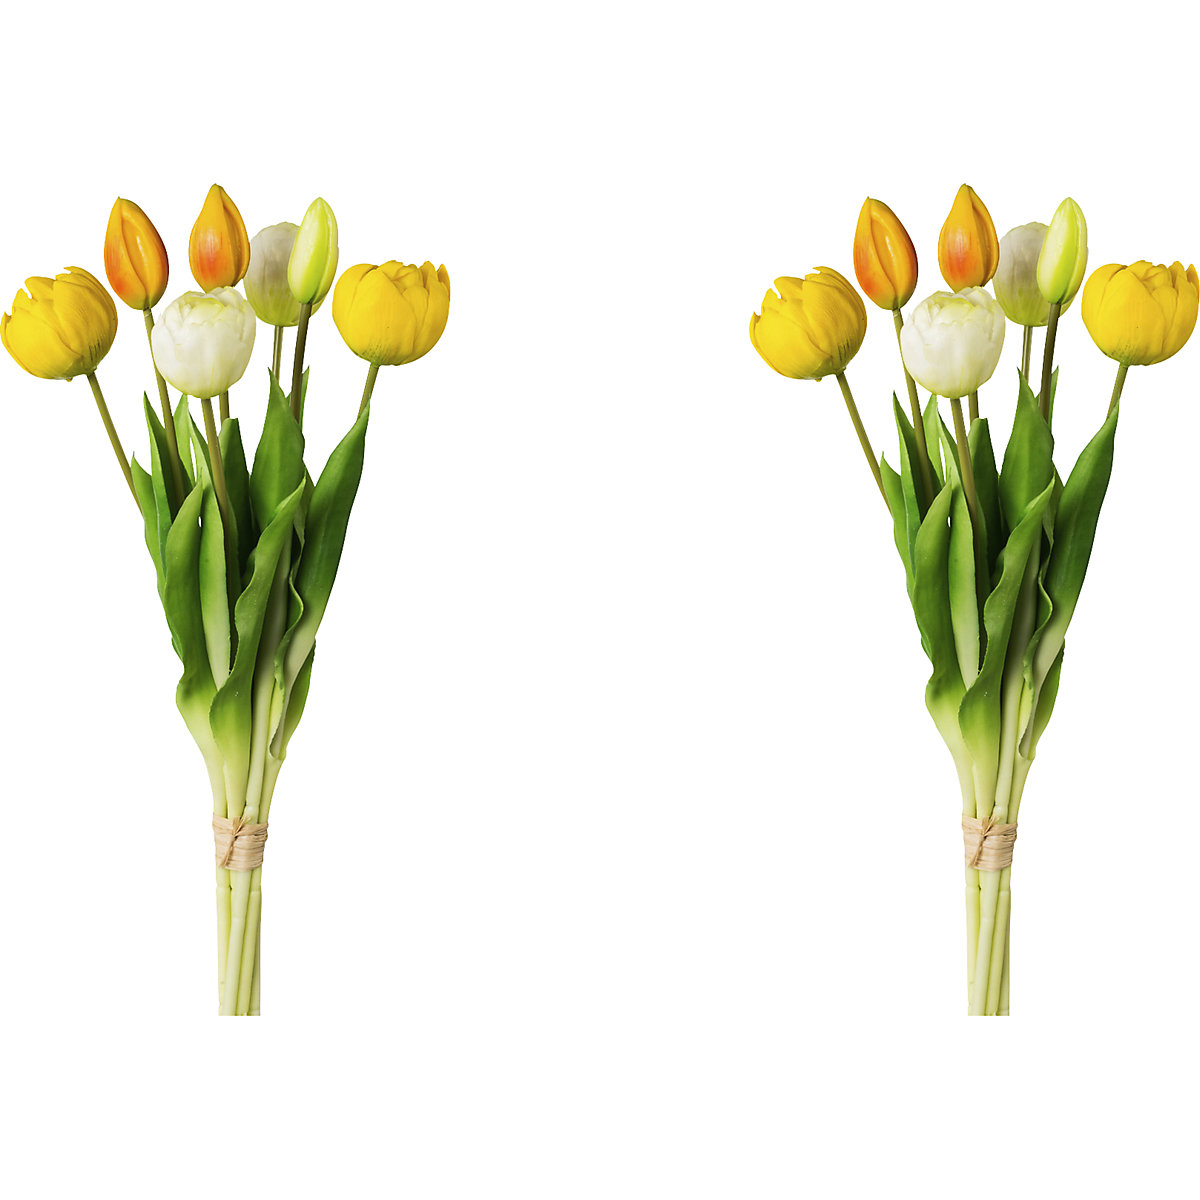 Teltvirágú tulipánok, valódi tapintás, 7 db-os csokor